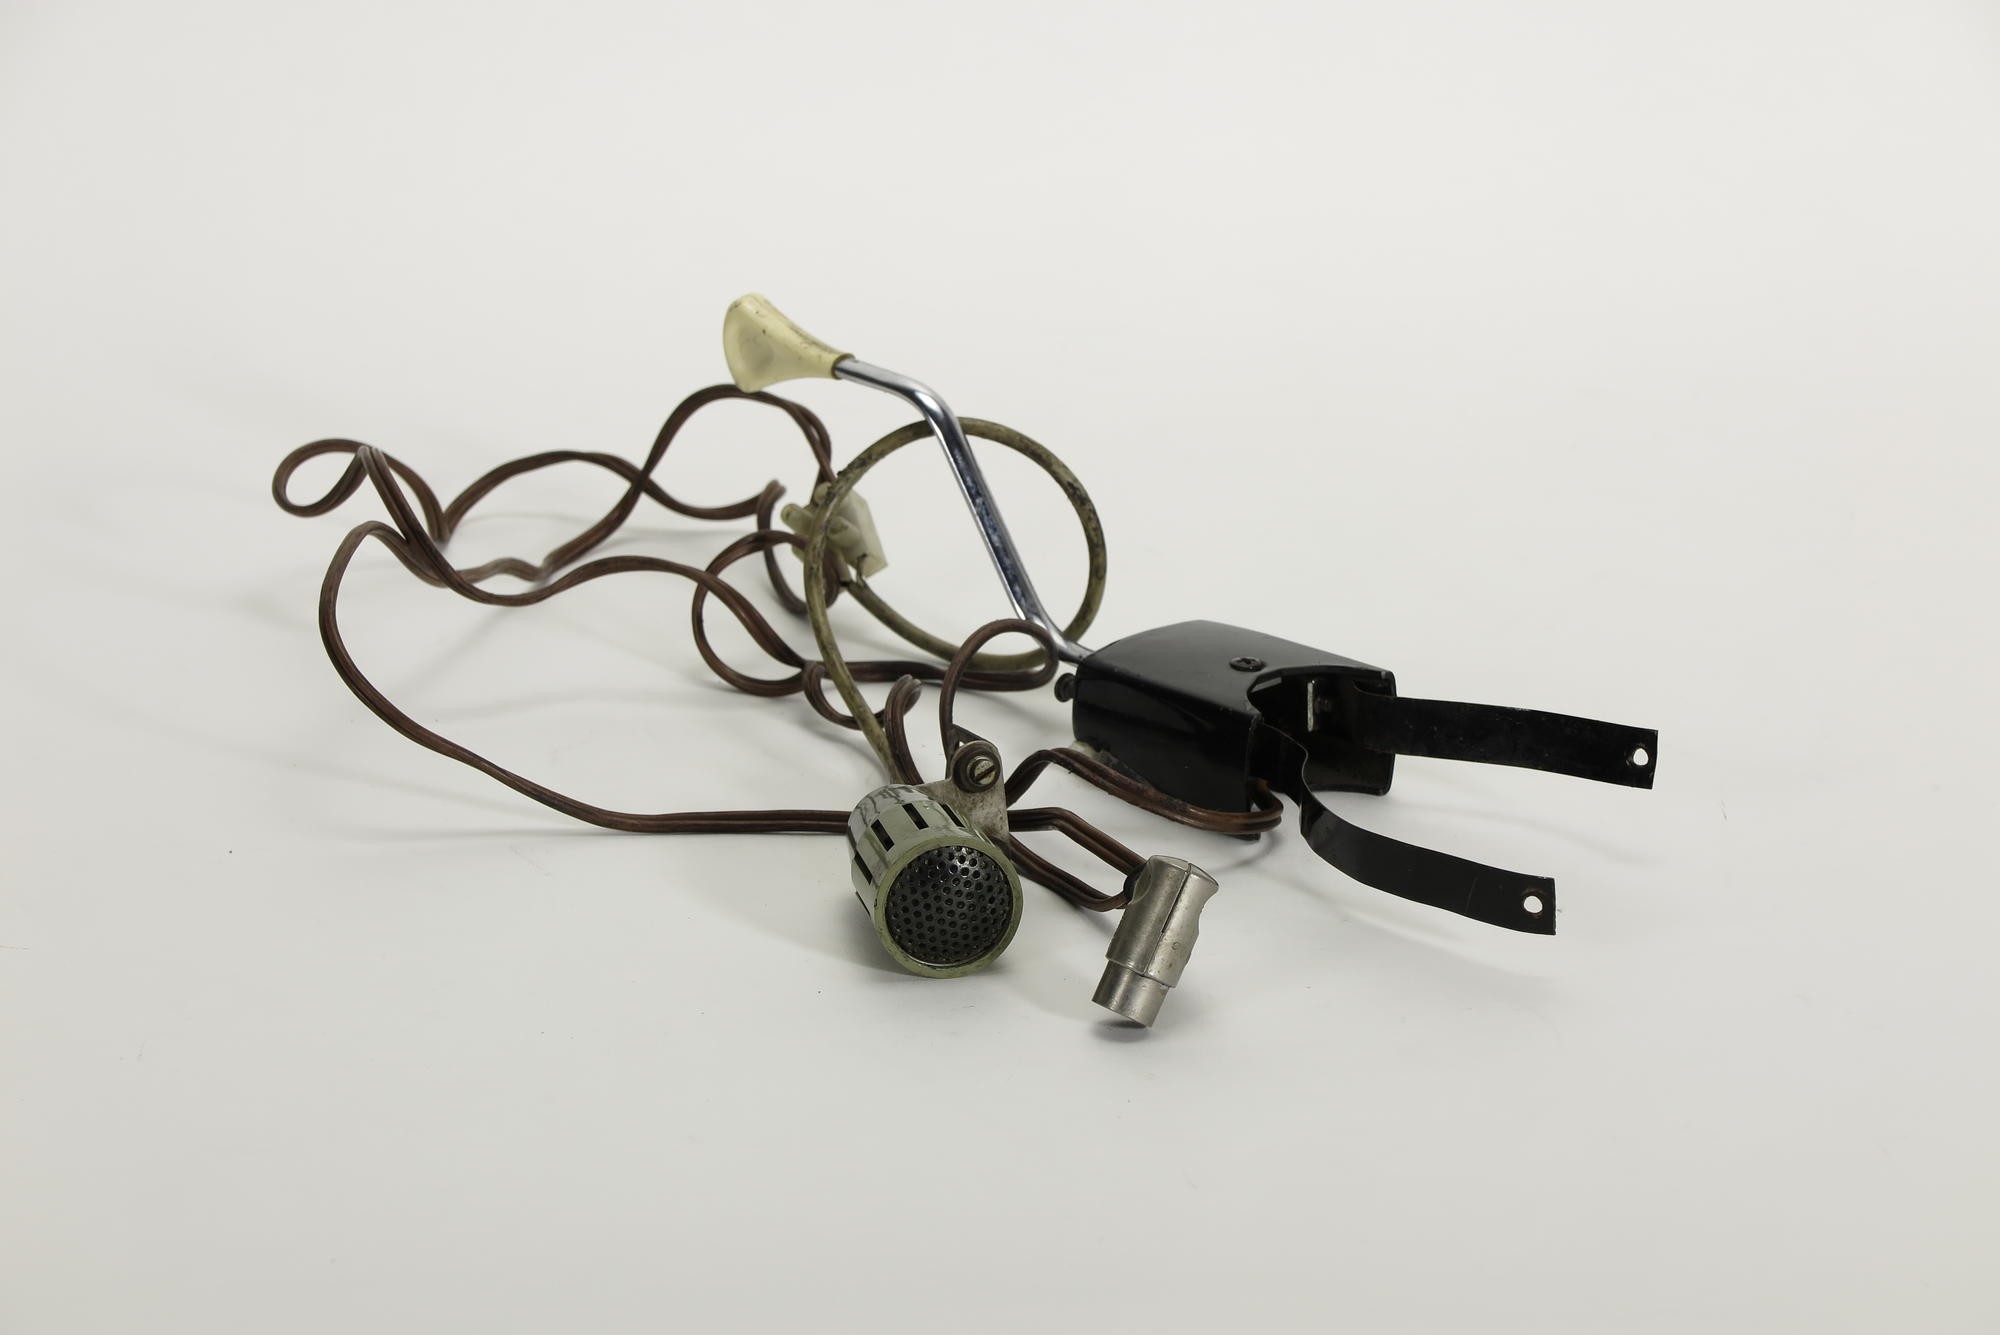 Mikrofon mit Schalter, Zubehör zu UKW-Fahrzeug-Funksprechgerät Telefunken Telecar VI A Typ SE 160-20 (Stiftung Deutsches Technikmuseum Berlin CC0)